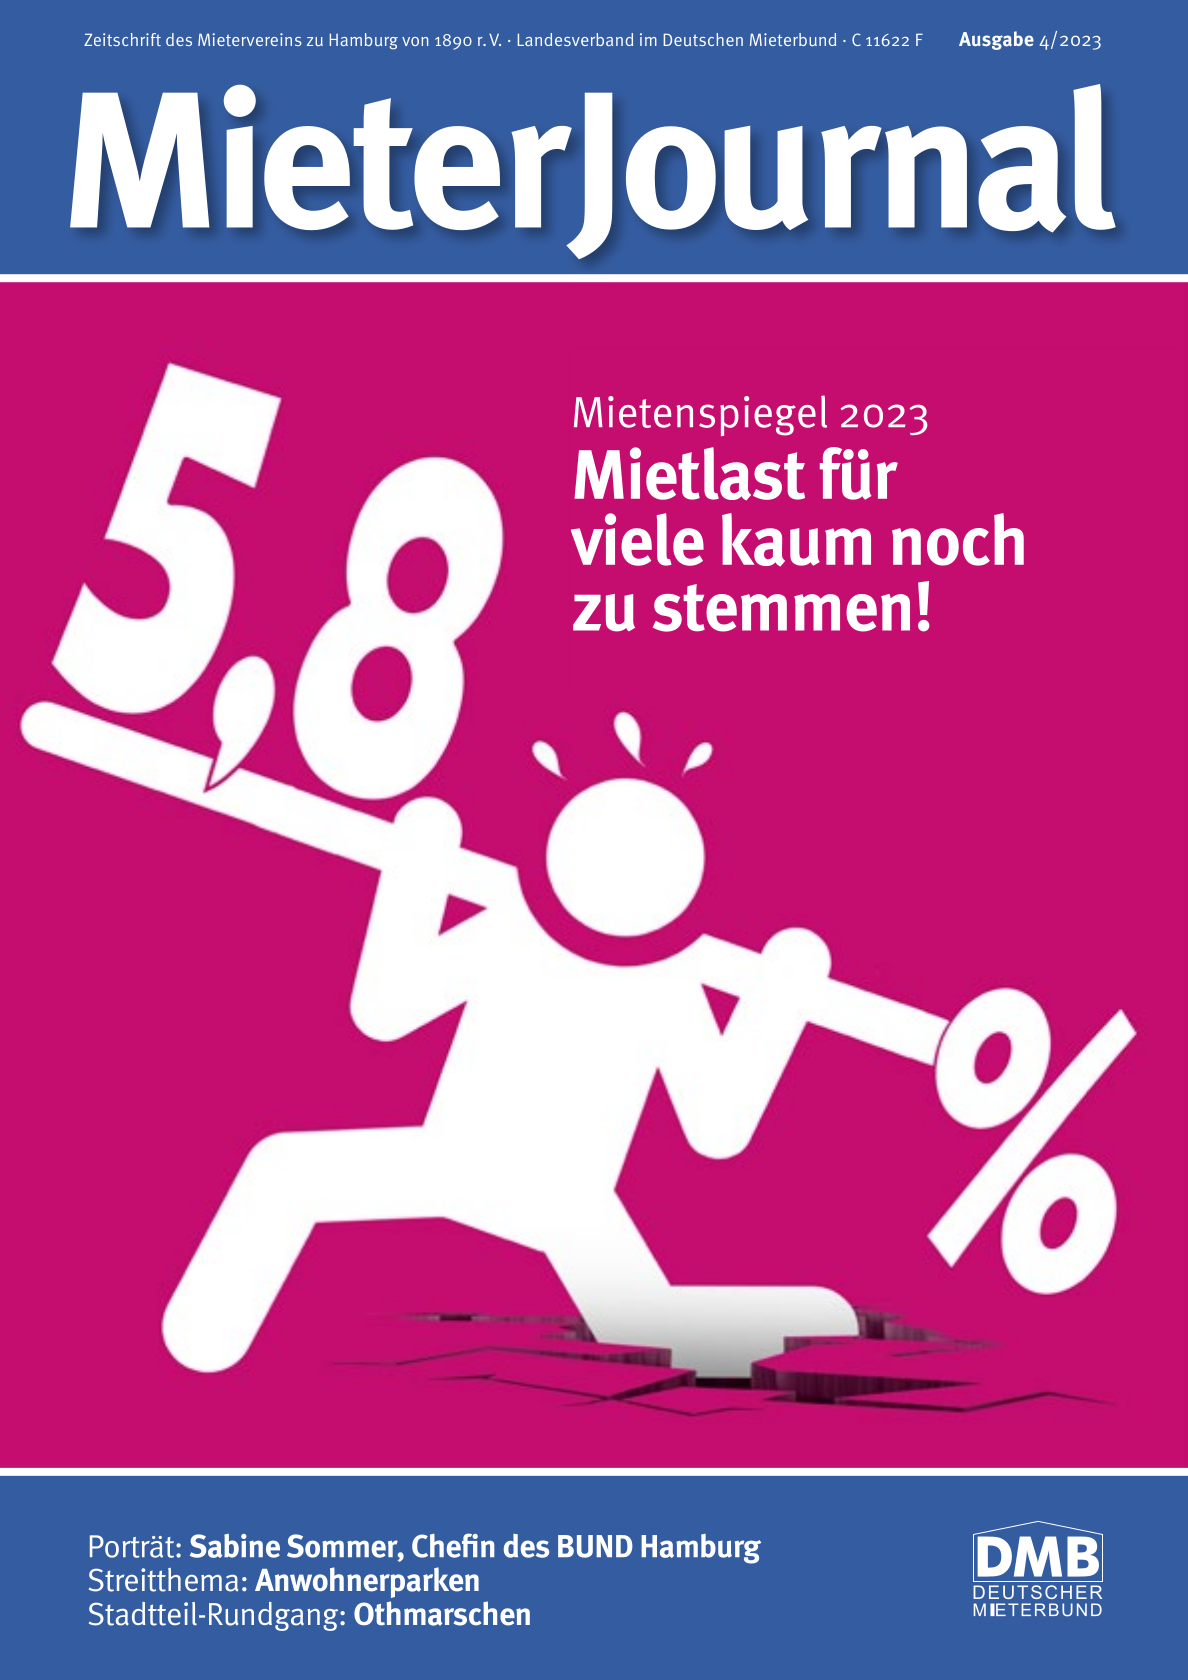 Die Titelseite des MieterJournals 4 2023 zeigt eine Figur, die ein Gewicht stemmt. Hier geht es darum, dass die Mieter:innen der Hansestadt die Erhöhung der Mieten um 5,8 Prozent kaum noch stemmen können.